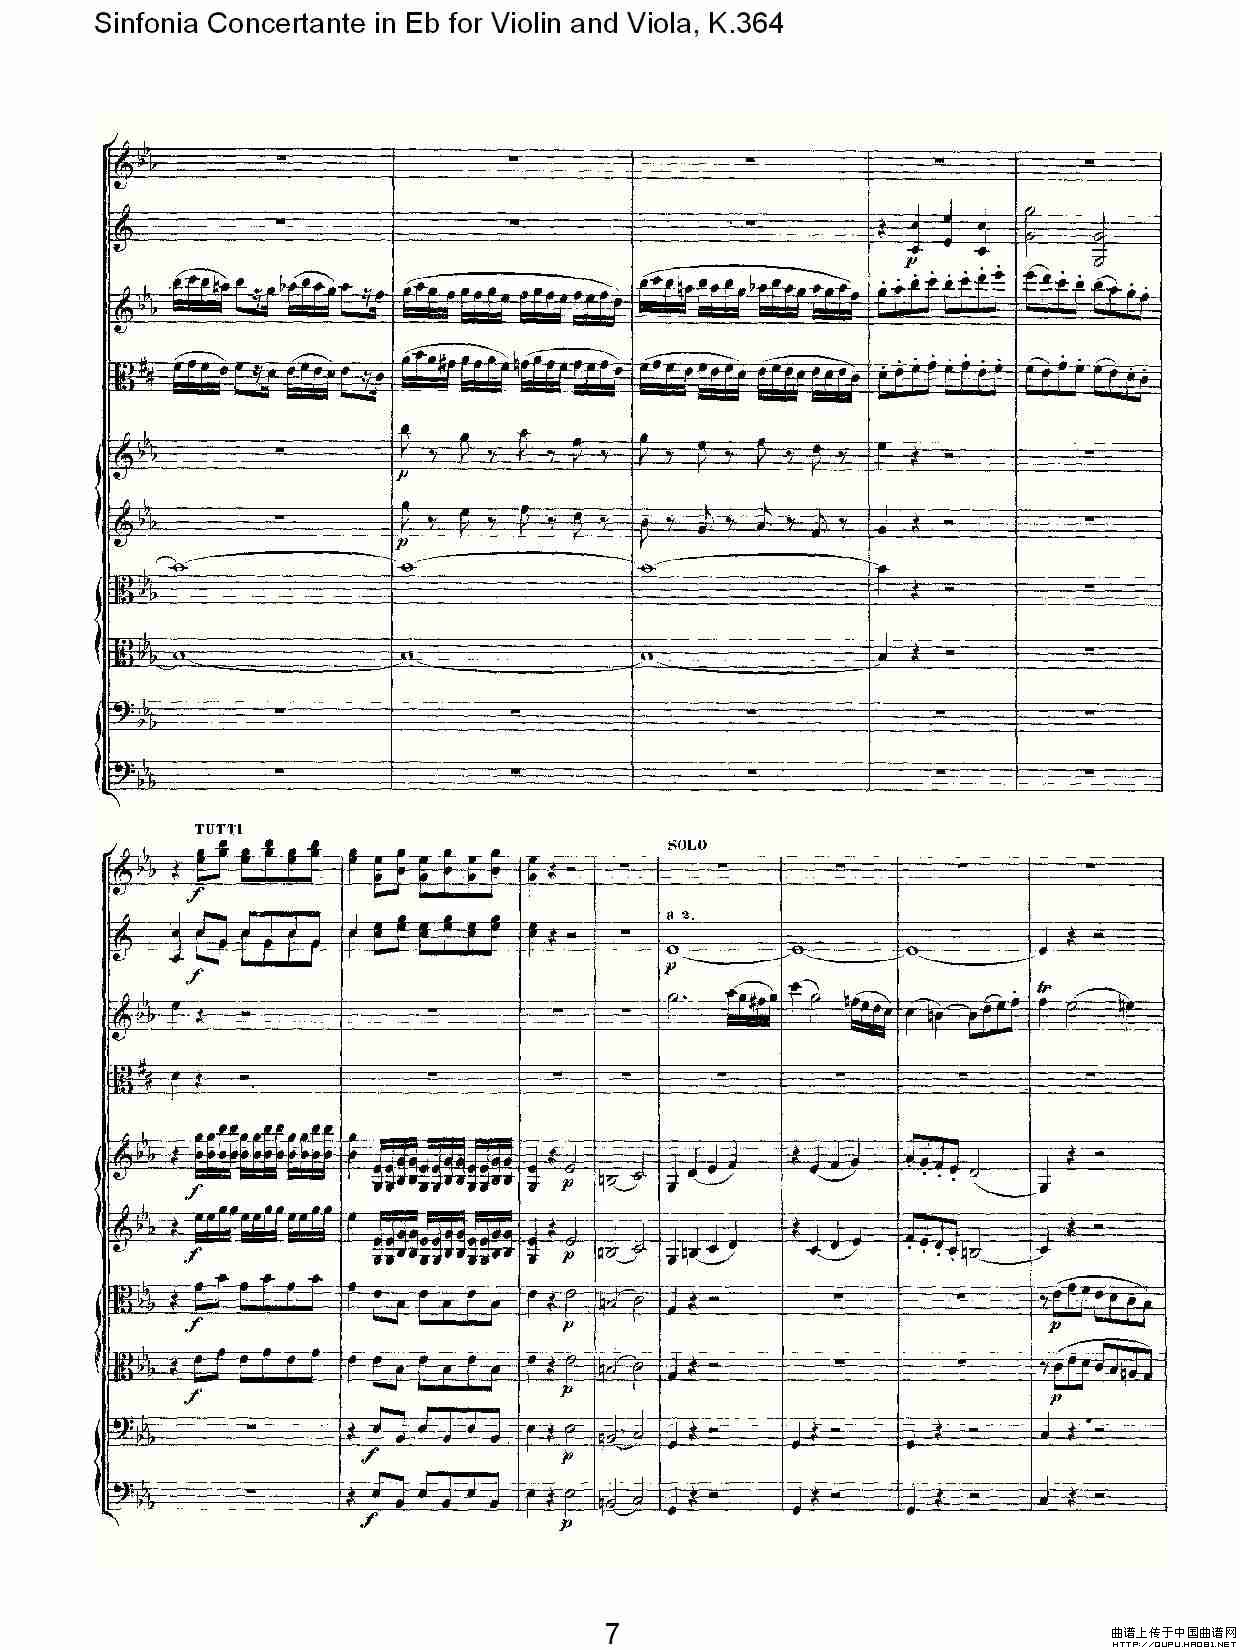 Eb调小提琴与中提琴炫技序曲, K.364（一）